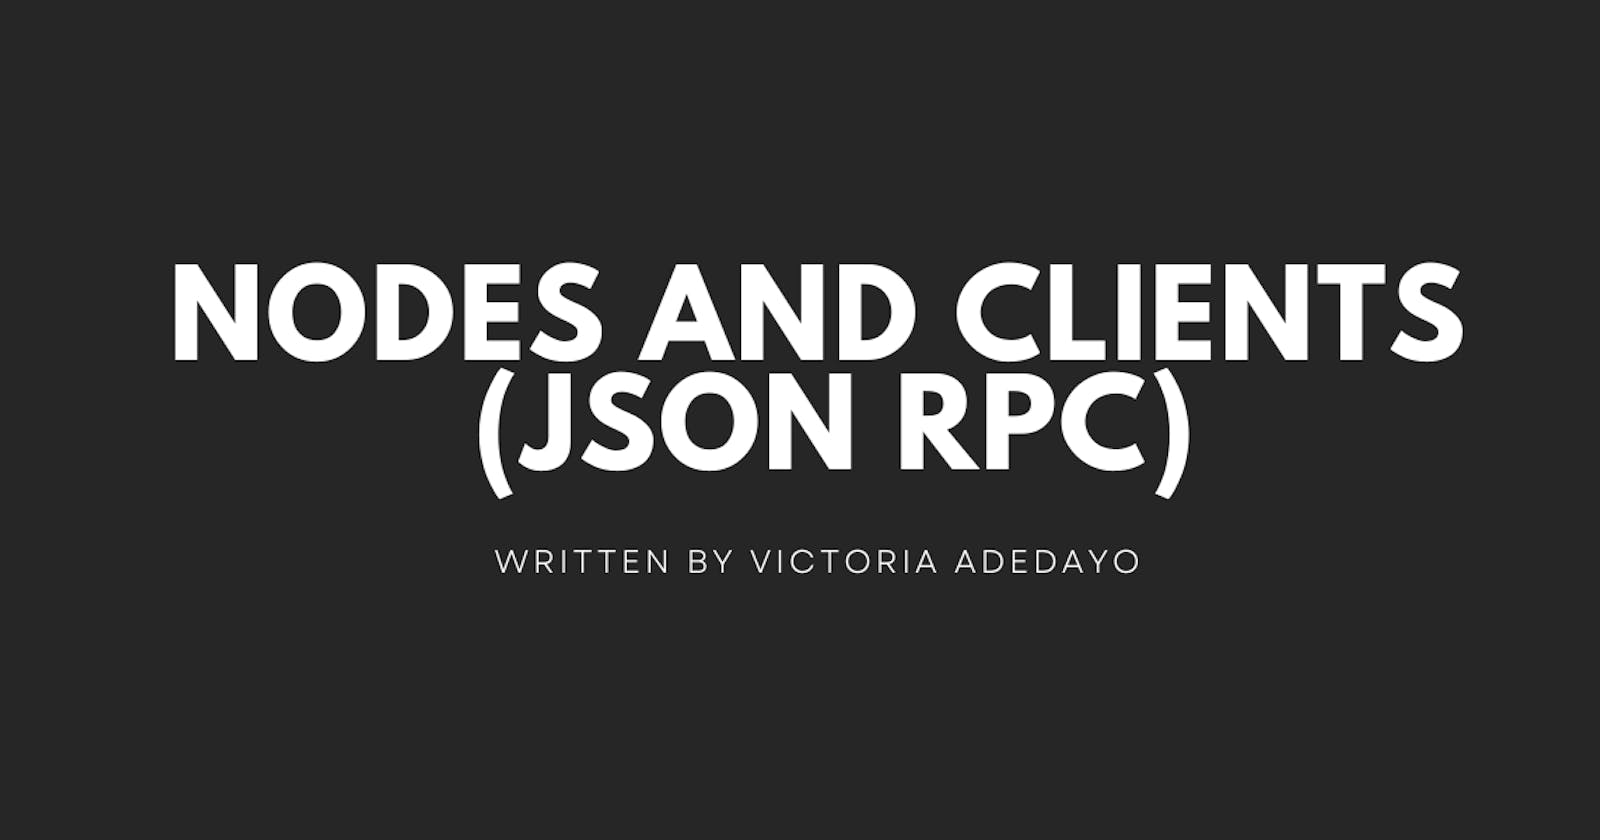 Nodes and Clients (JSON RPC)